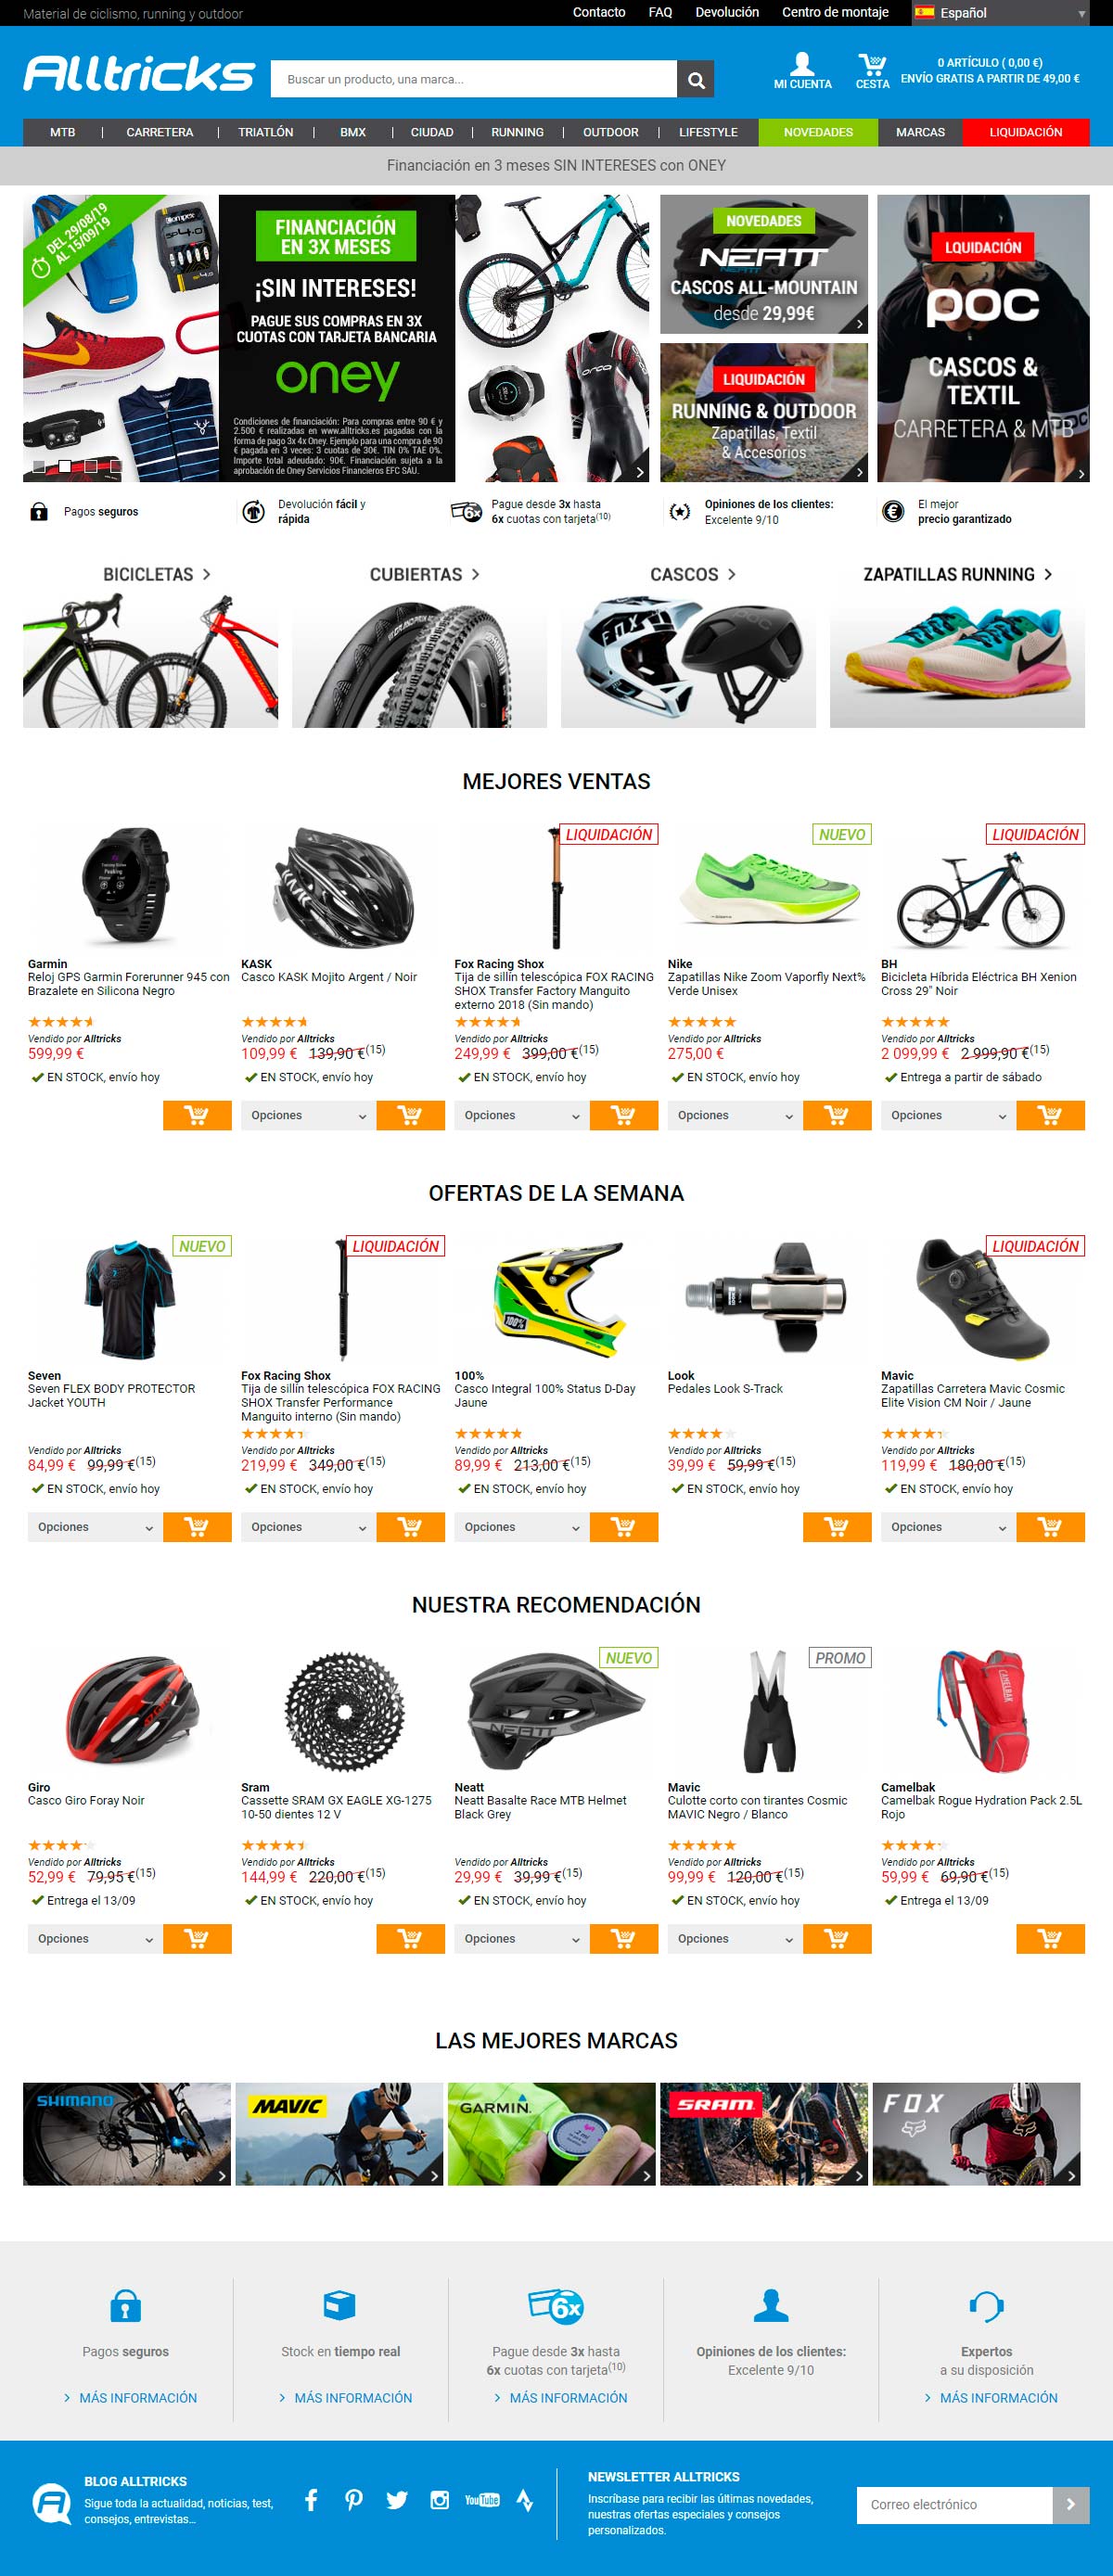 En TodoMountainBike: Decathlon compra Alltricks, uno de los principales comercios online de ciclismo en Europa